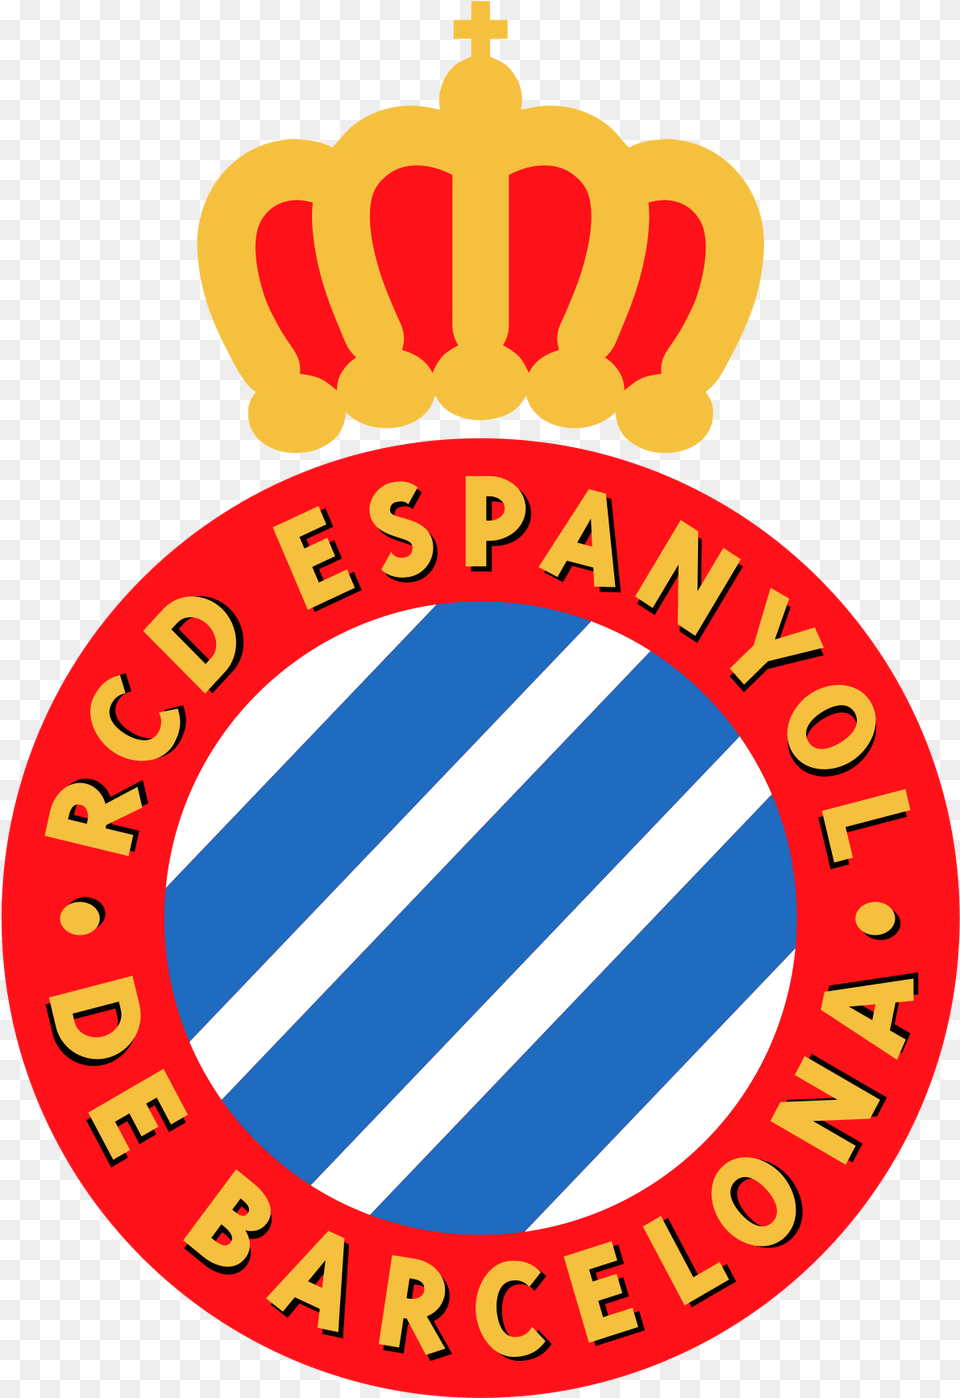 Rcd Espanyol Rcd Espanyol Logo, Badge, Symbol, Emblem, Dynamite Png Image